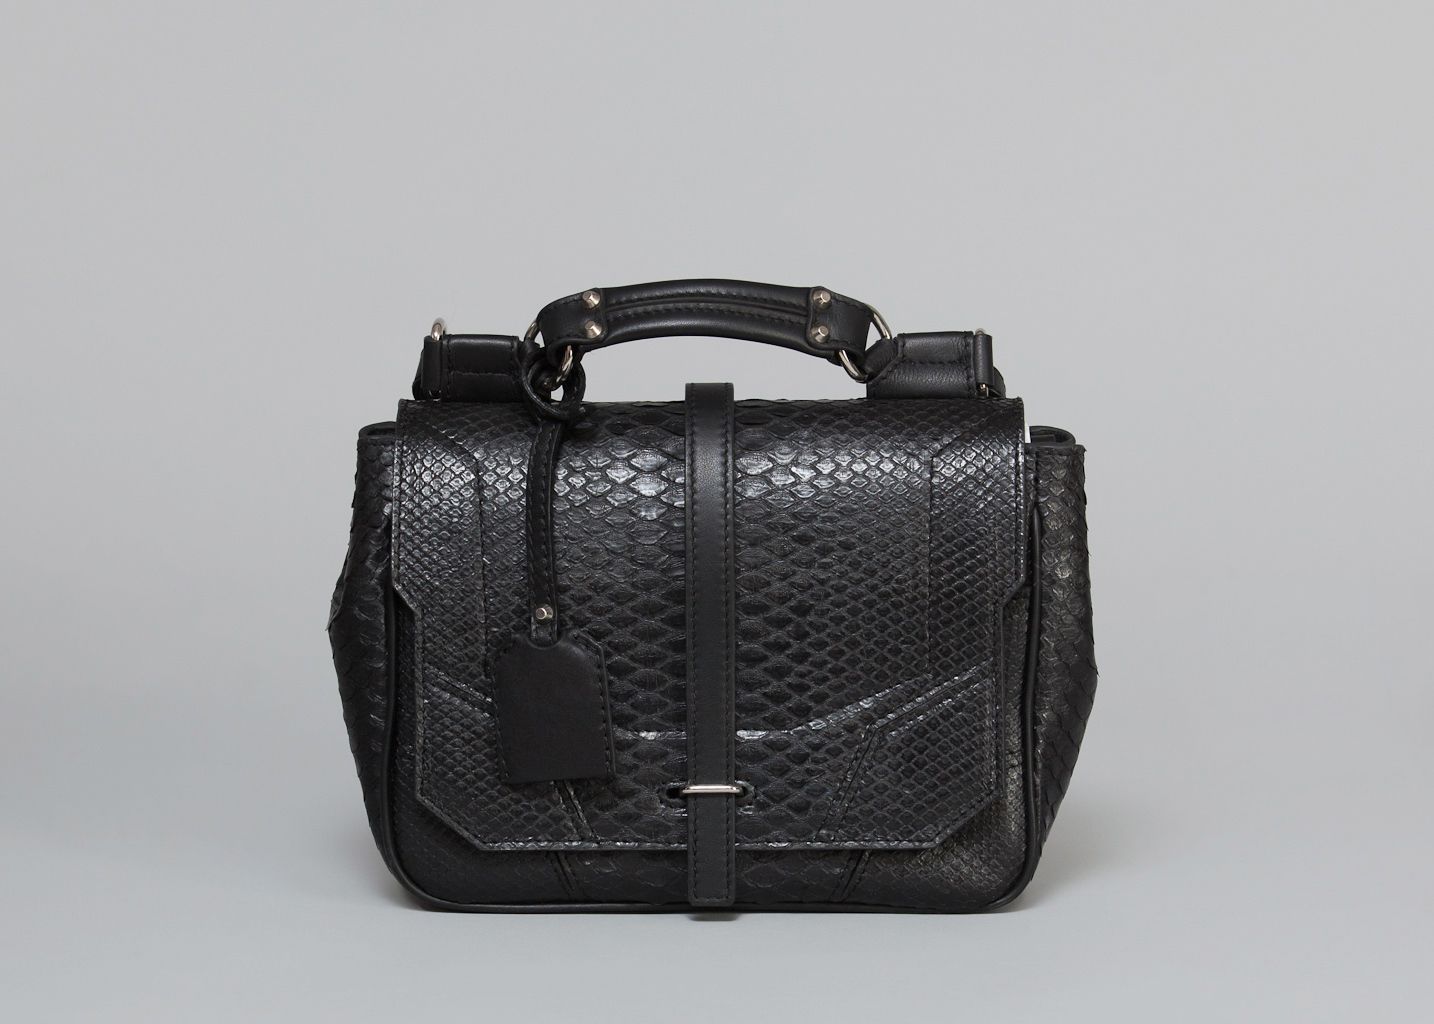 Jumelle Bag Florian Denicourt Black on sale at LEXCEPTION.COM